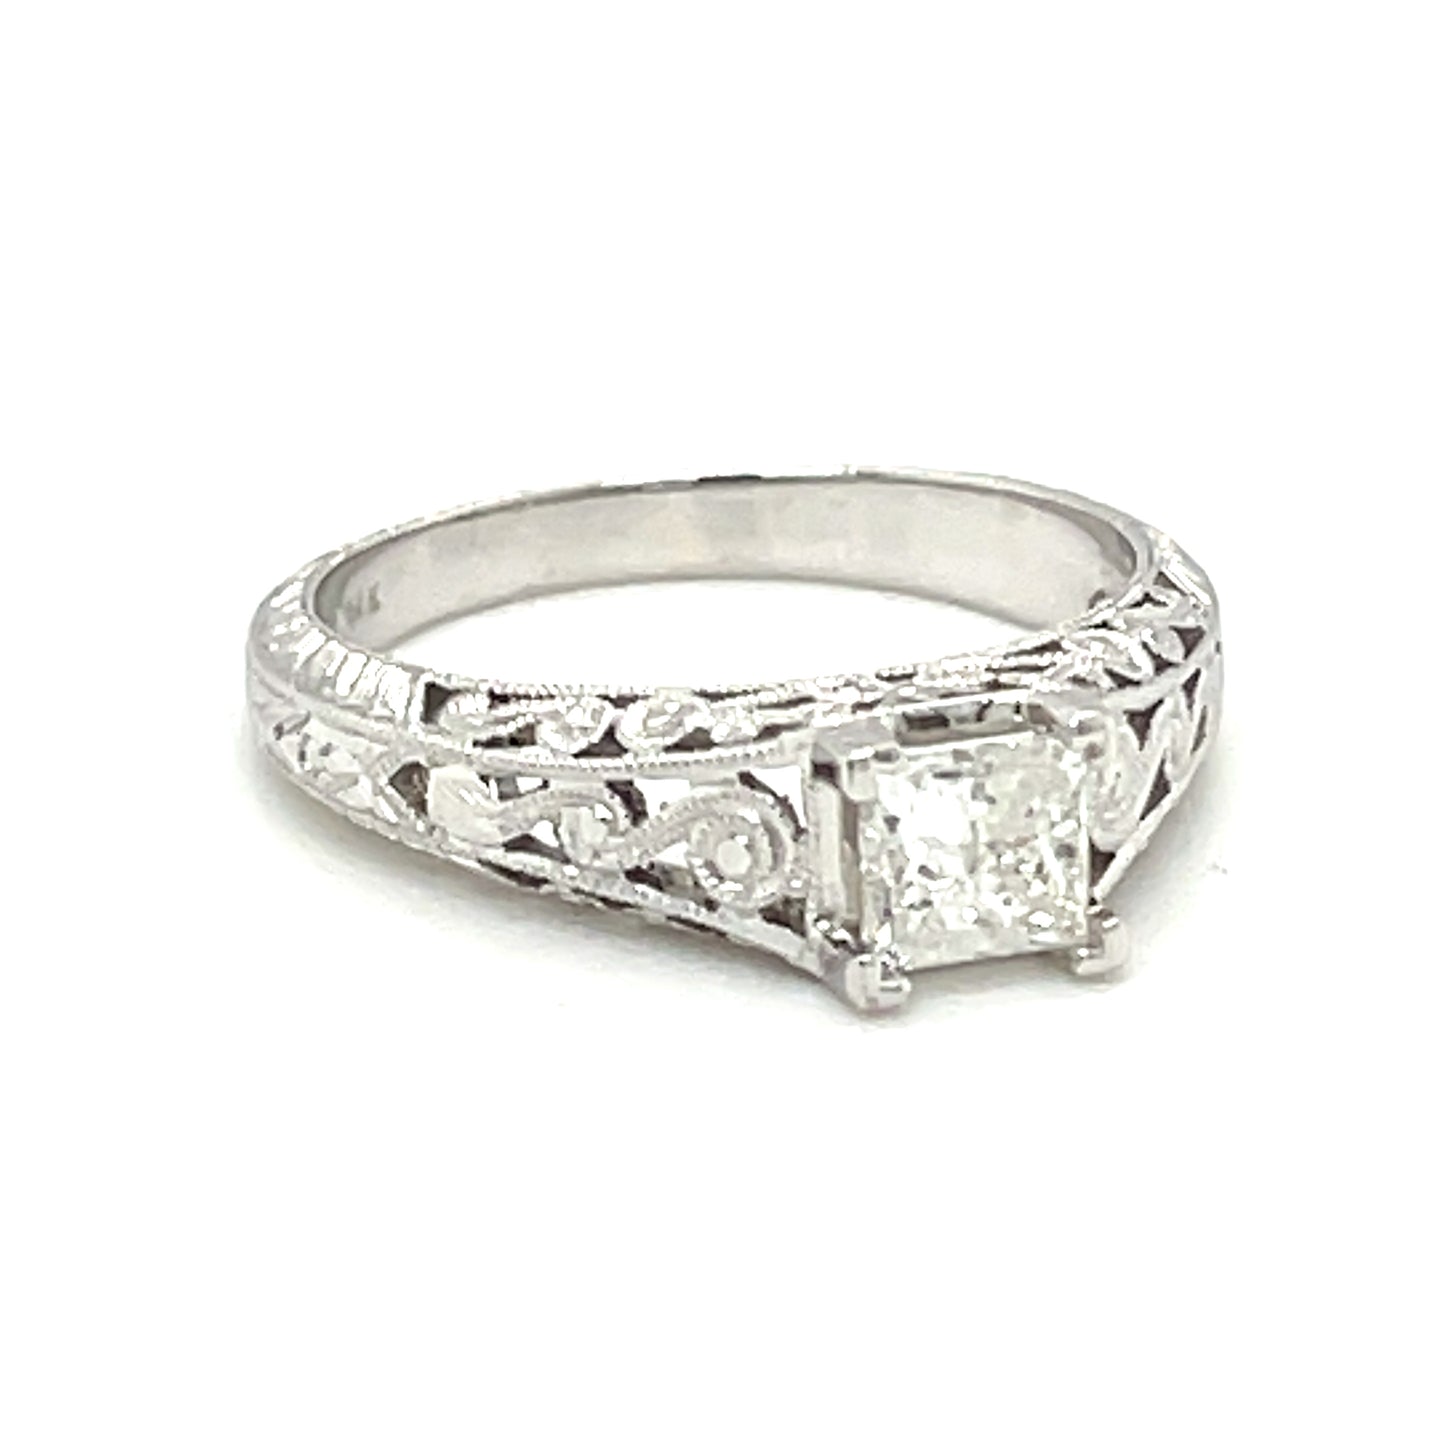 Princess Diamond Engagement Estate Ring with Vintage Filigree Design in 14-Karat White Gold